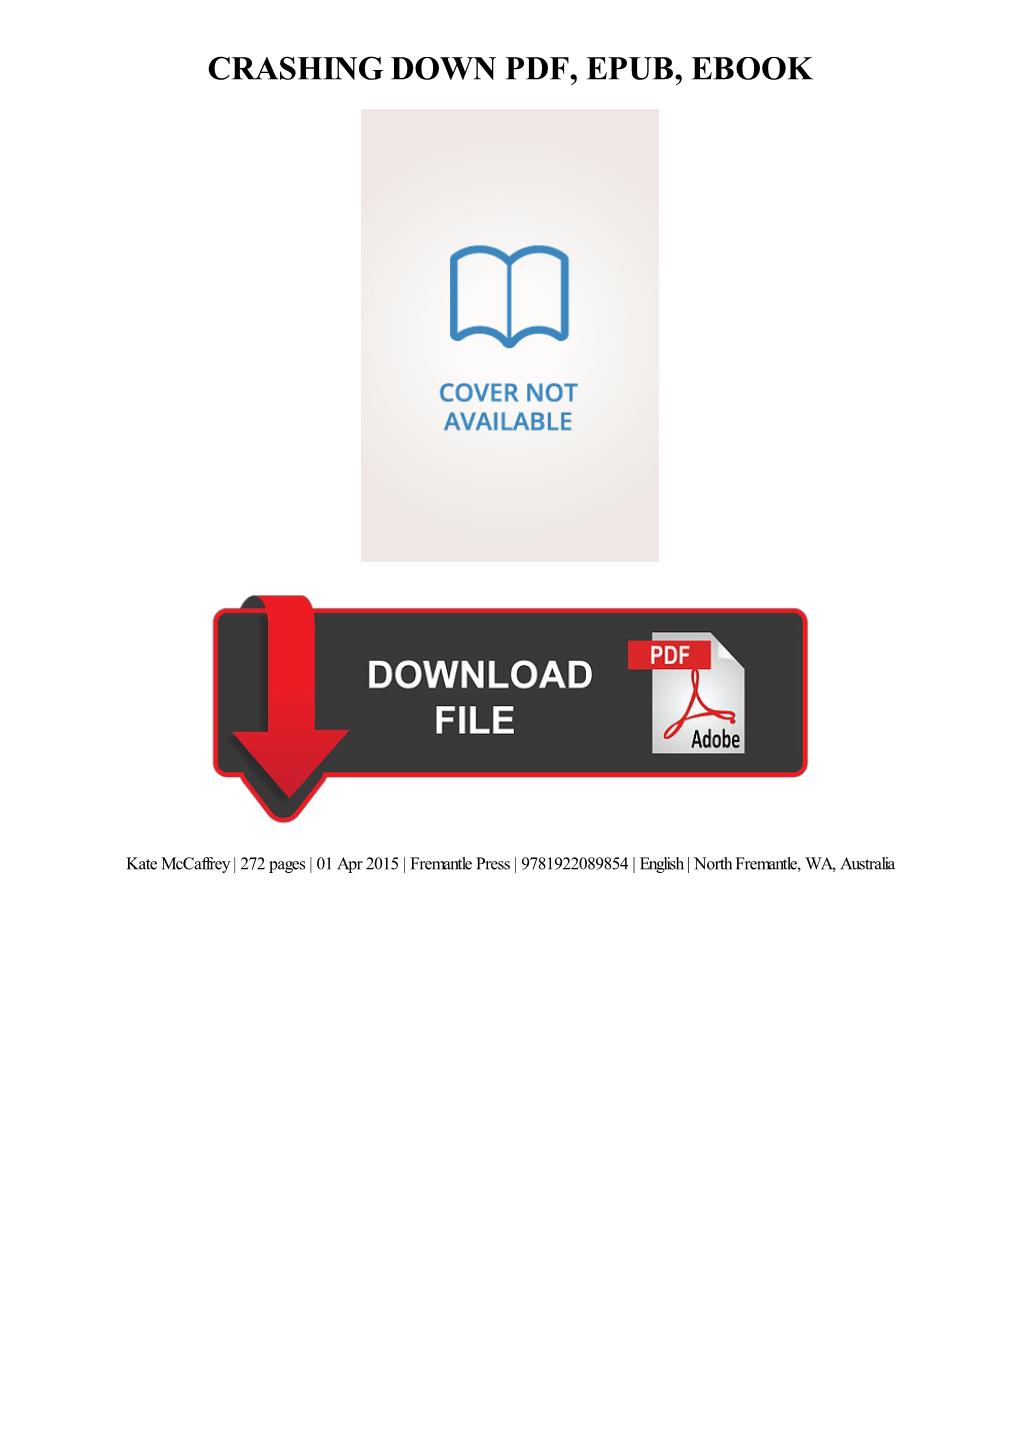 {Download PDF} Crashing Down Ebook Free Download